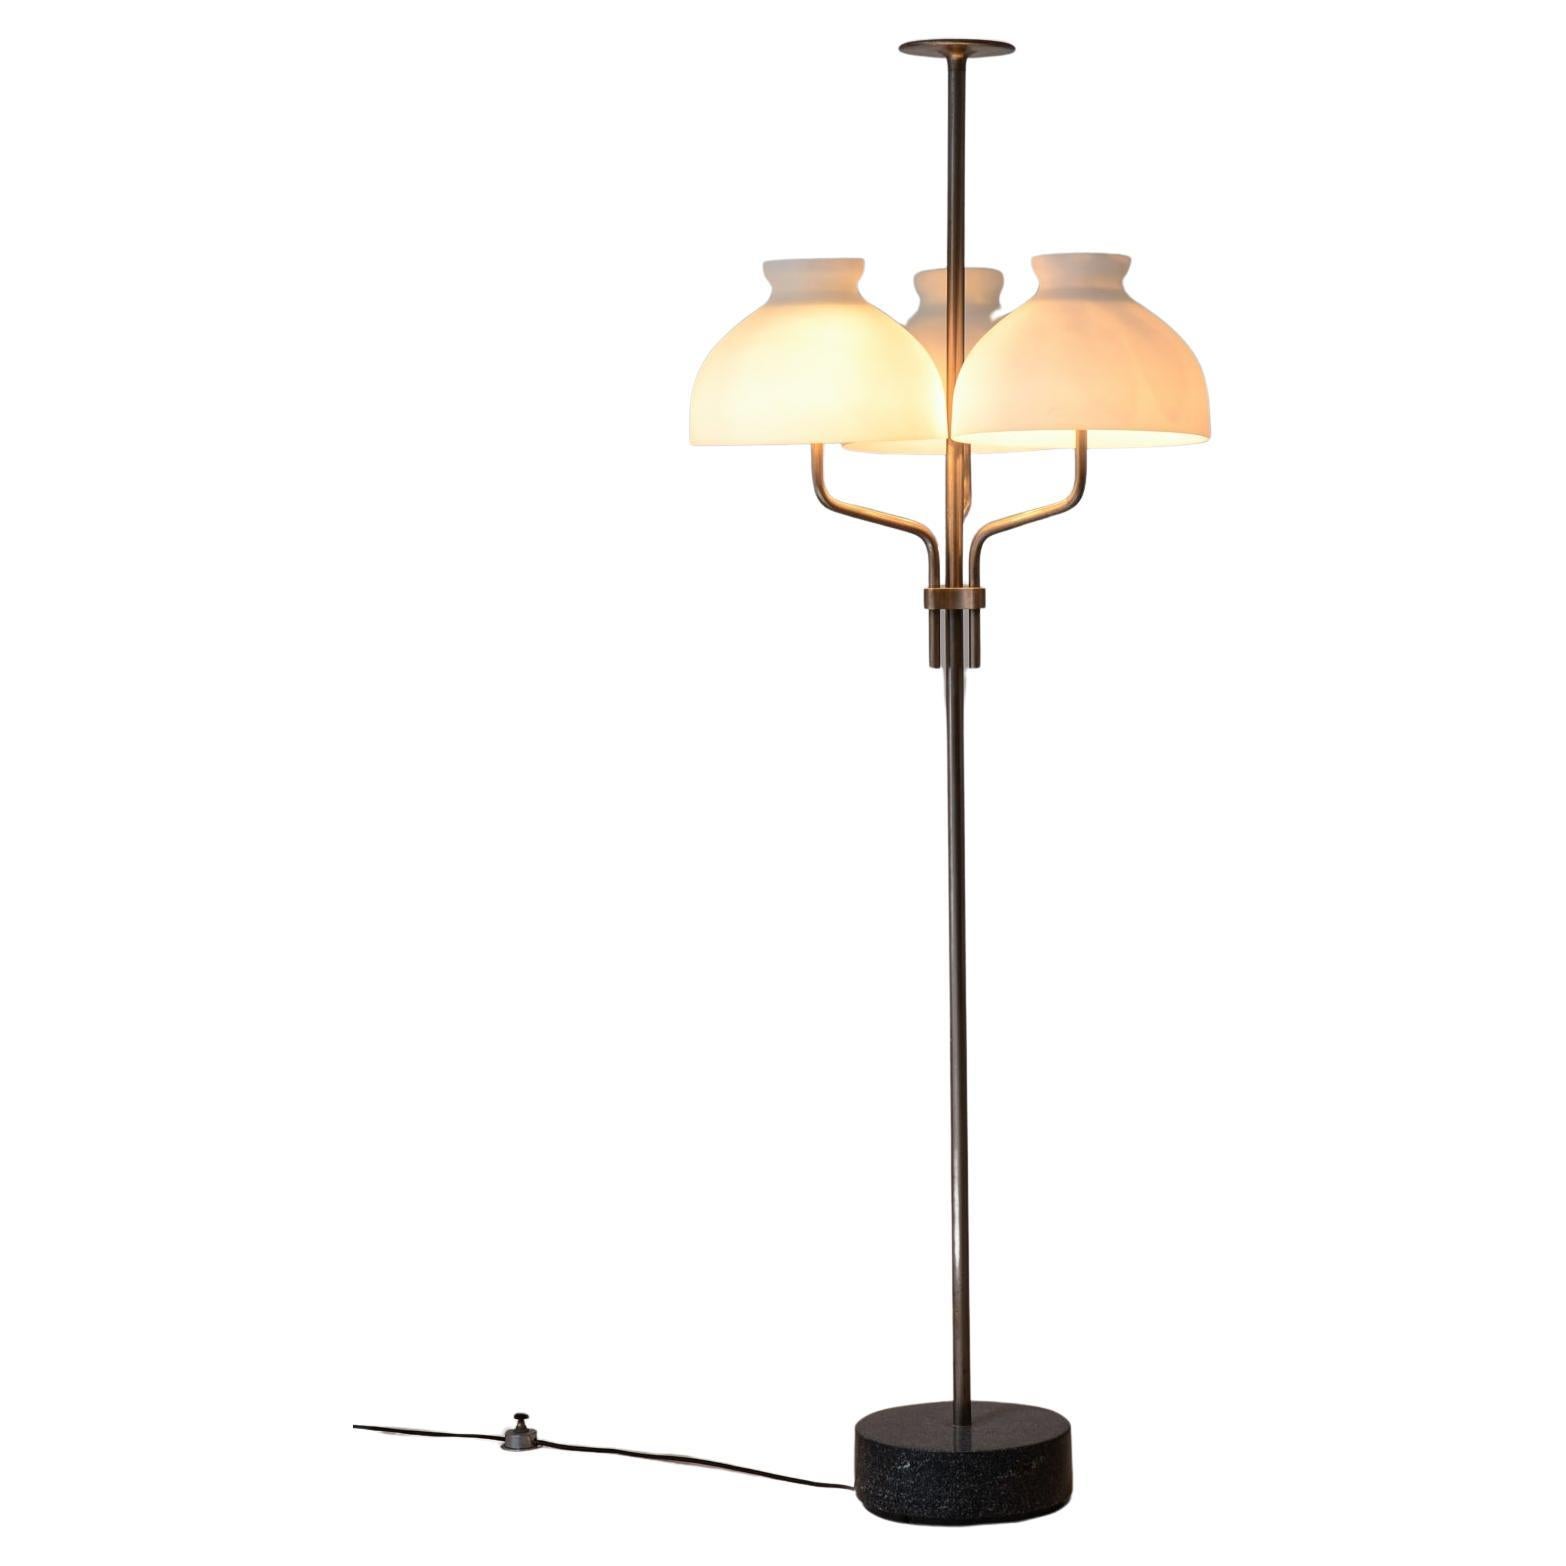 Stehlampe aus Stahl, Modell Arenzano, Ignazio Gardella